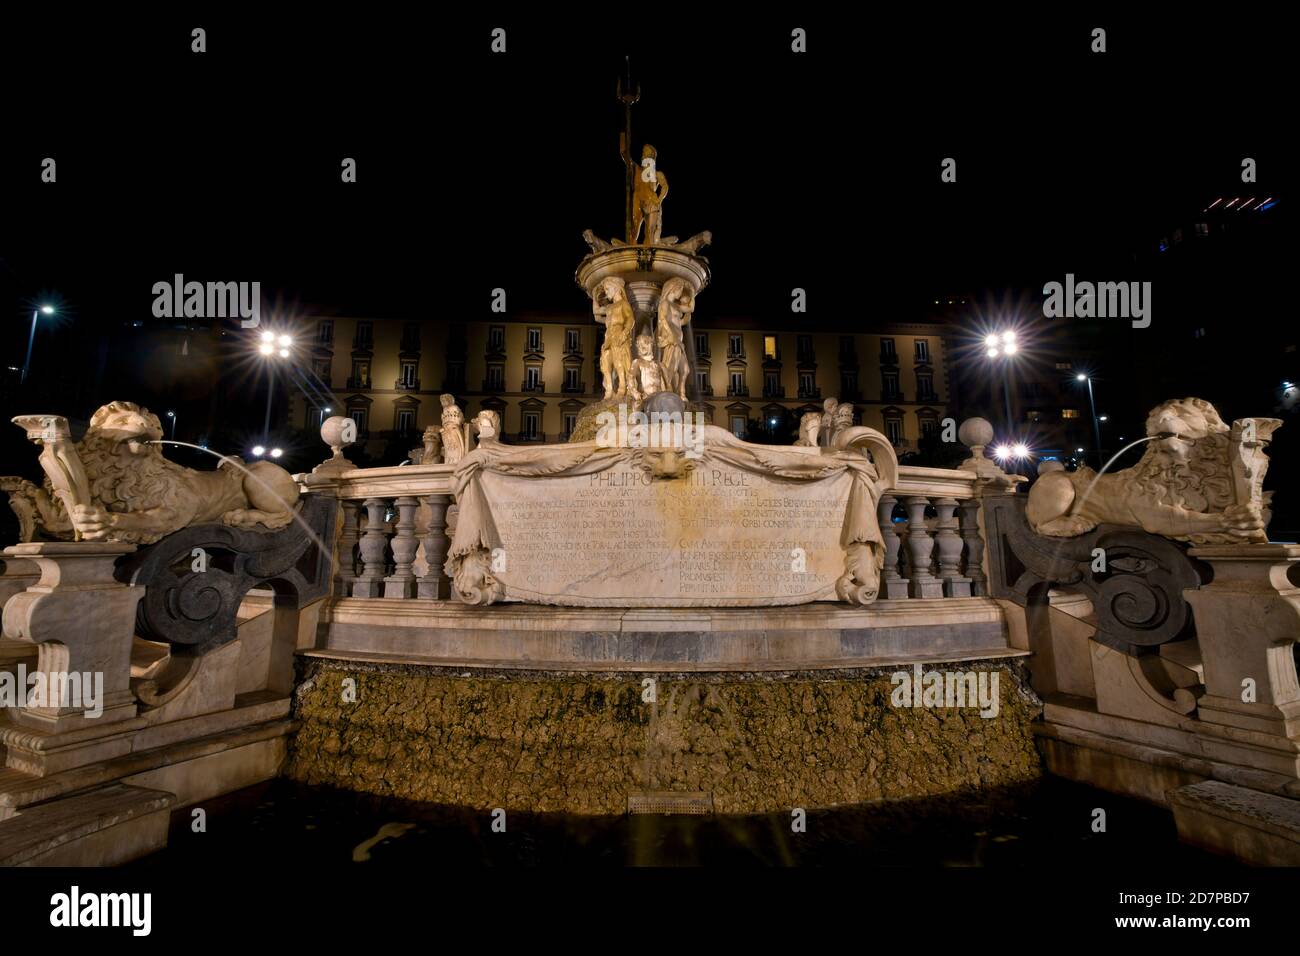 Fountain of Neptune (Fontana del Nettuno) is a monumental fountain, located in Municipio square, Naples, Italy Stock Photo